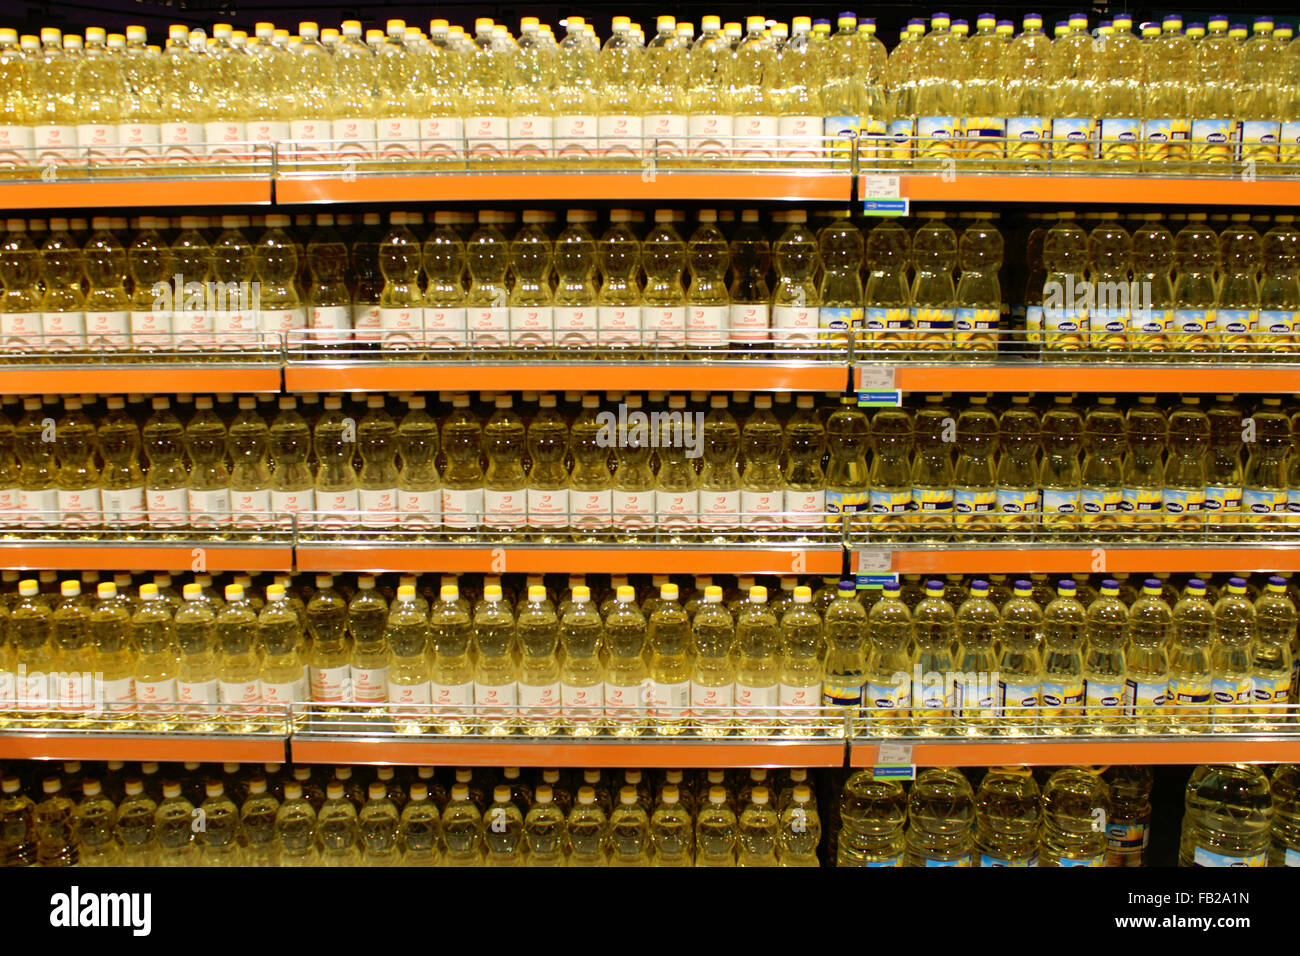 Sonnenblumenöl von ukrainischen landwirtschaftlichen festen Chumak in die Flaschen im Regal des Shops gemacht Stockfoto